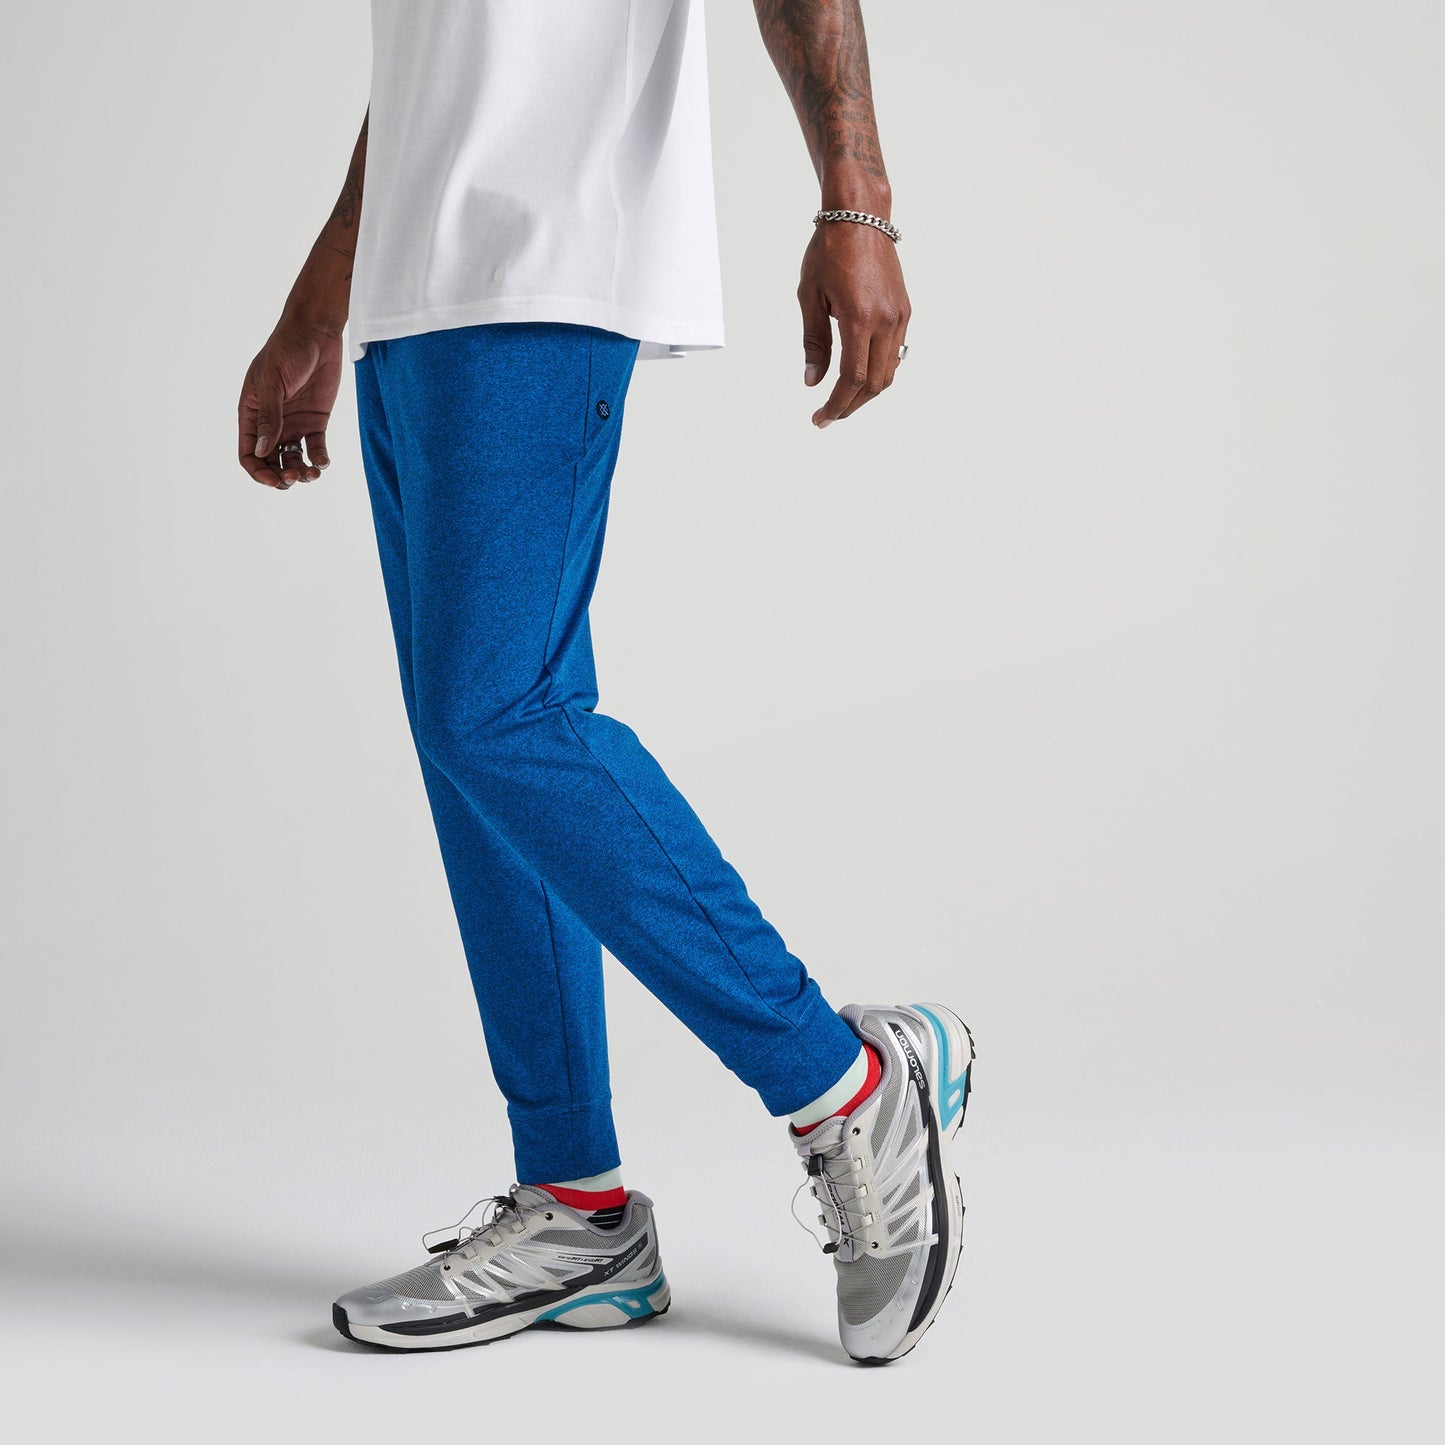 Pantalon de jogging bleu Primer de Stance | modèle